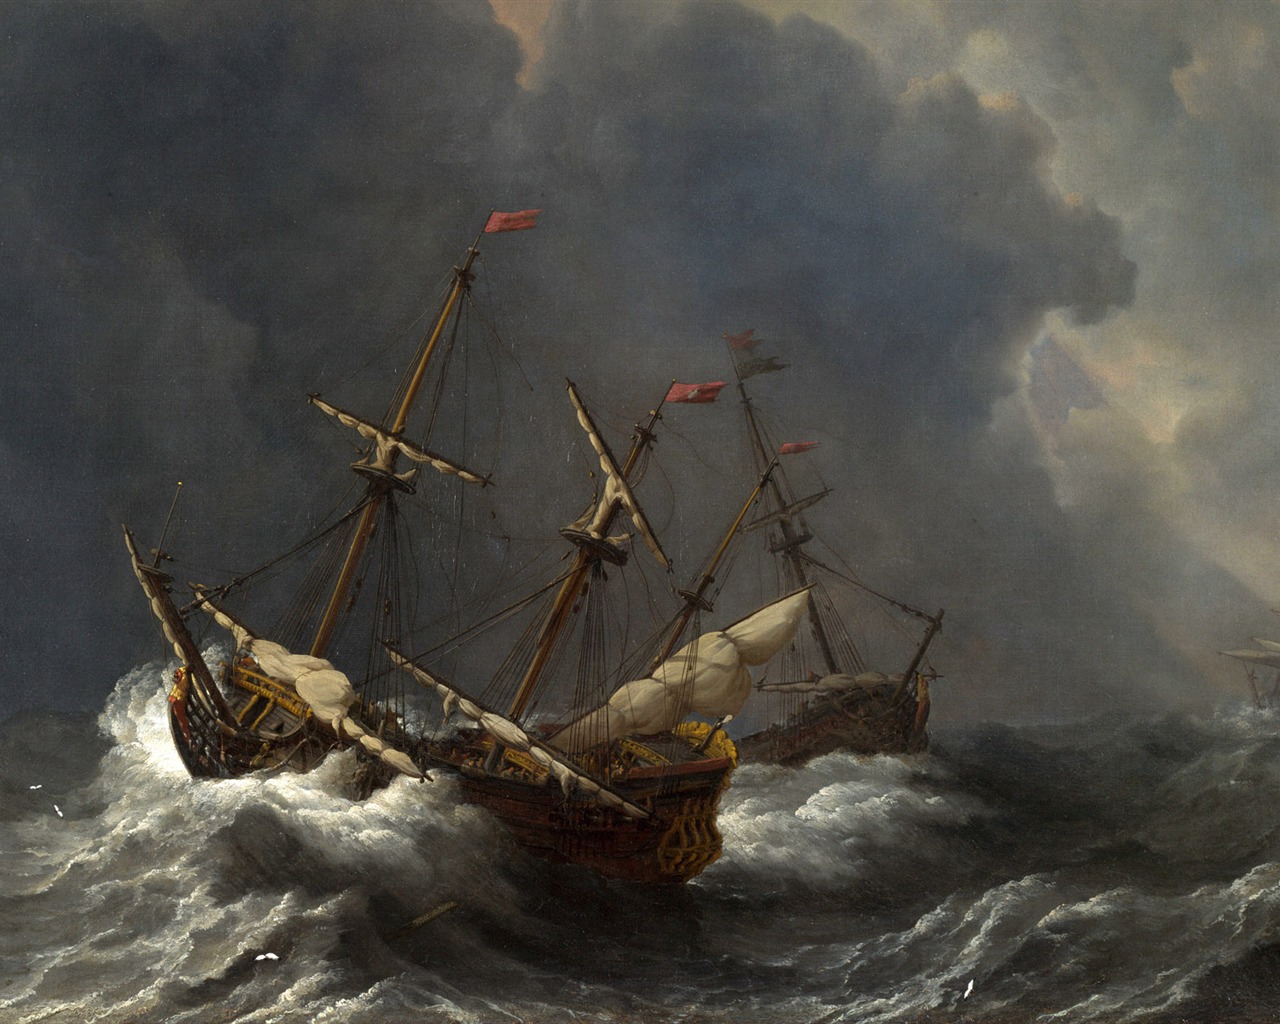 伦敦画廊帆船 壁纸(二)9 - 1280x1024